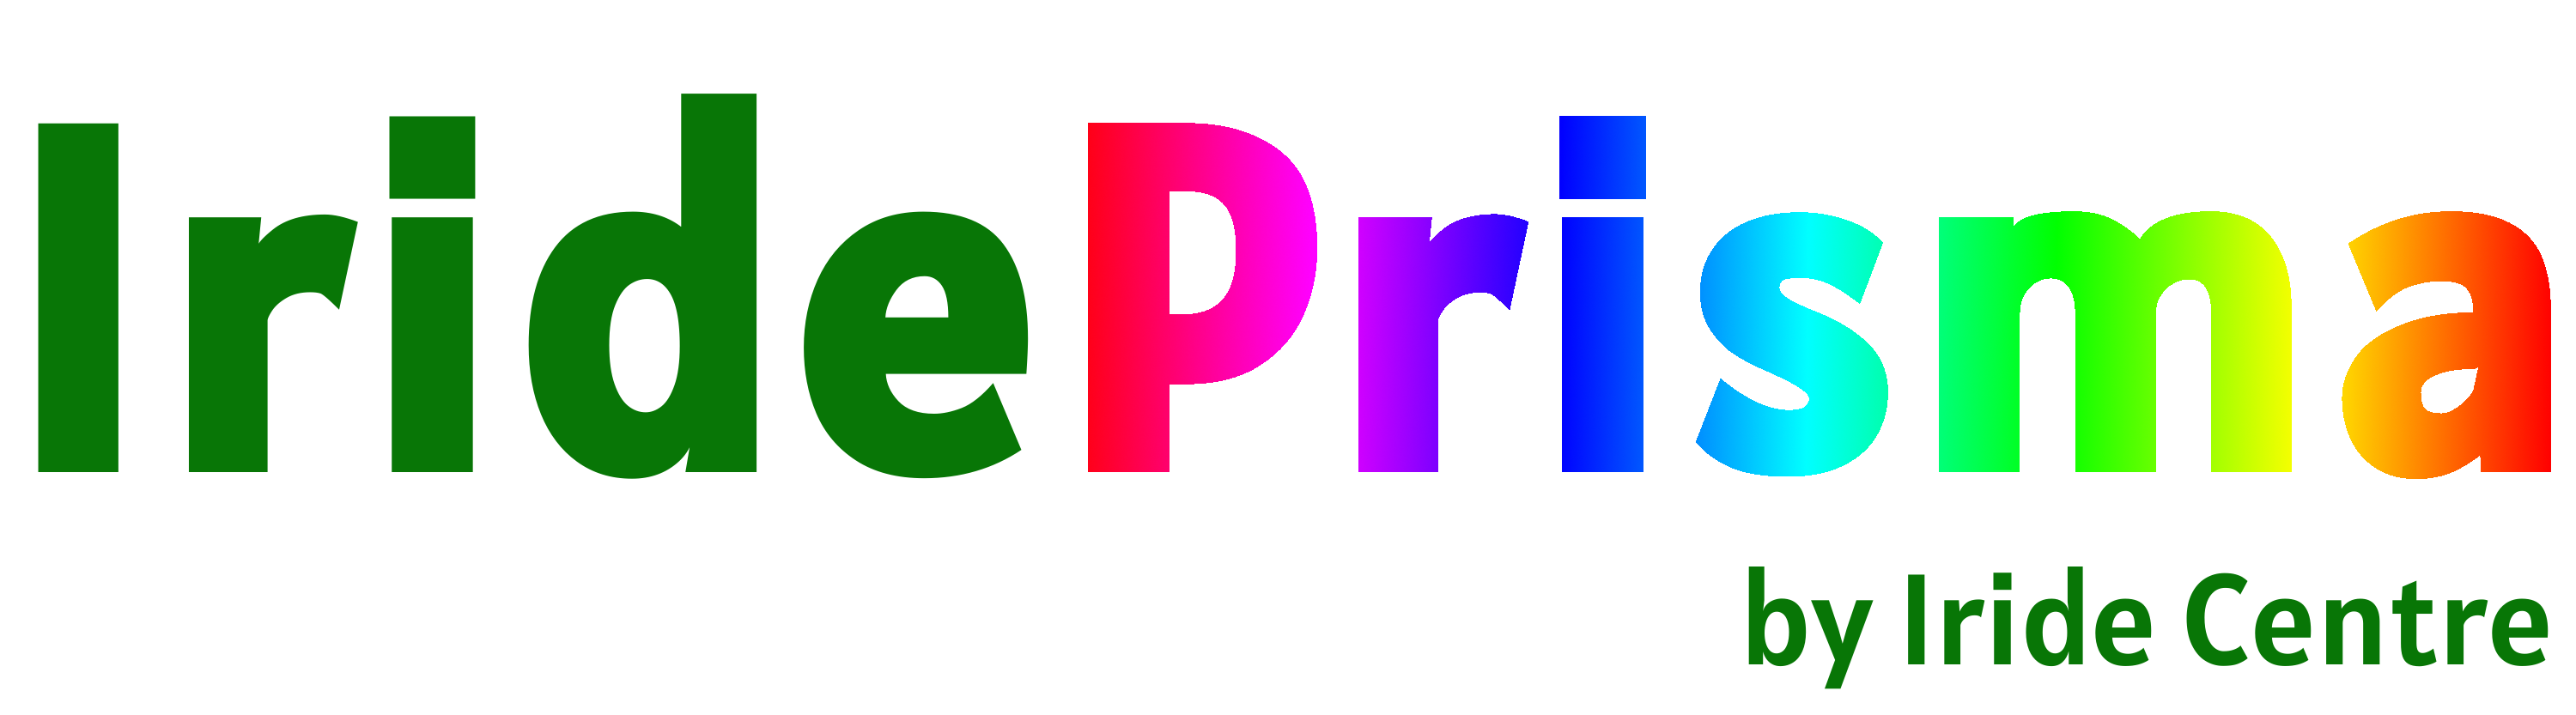 Logo Prisma sin fondo